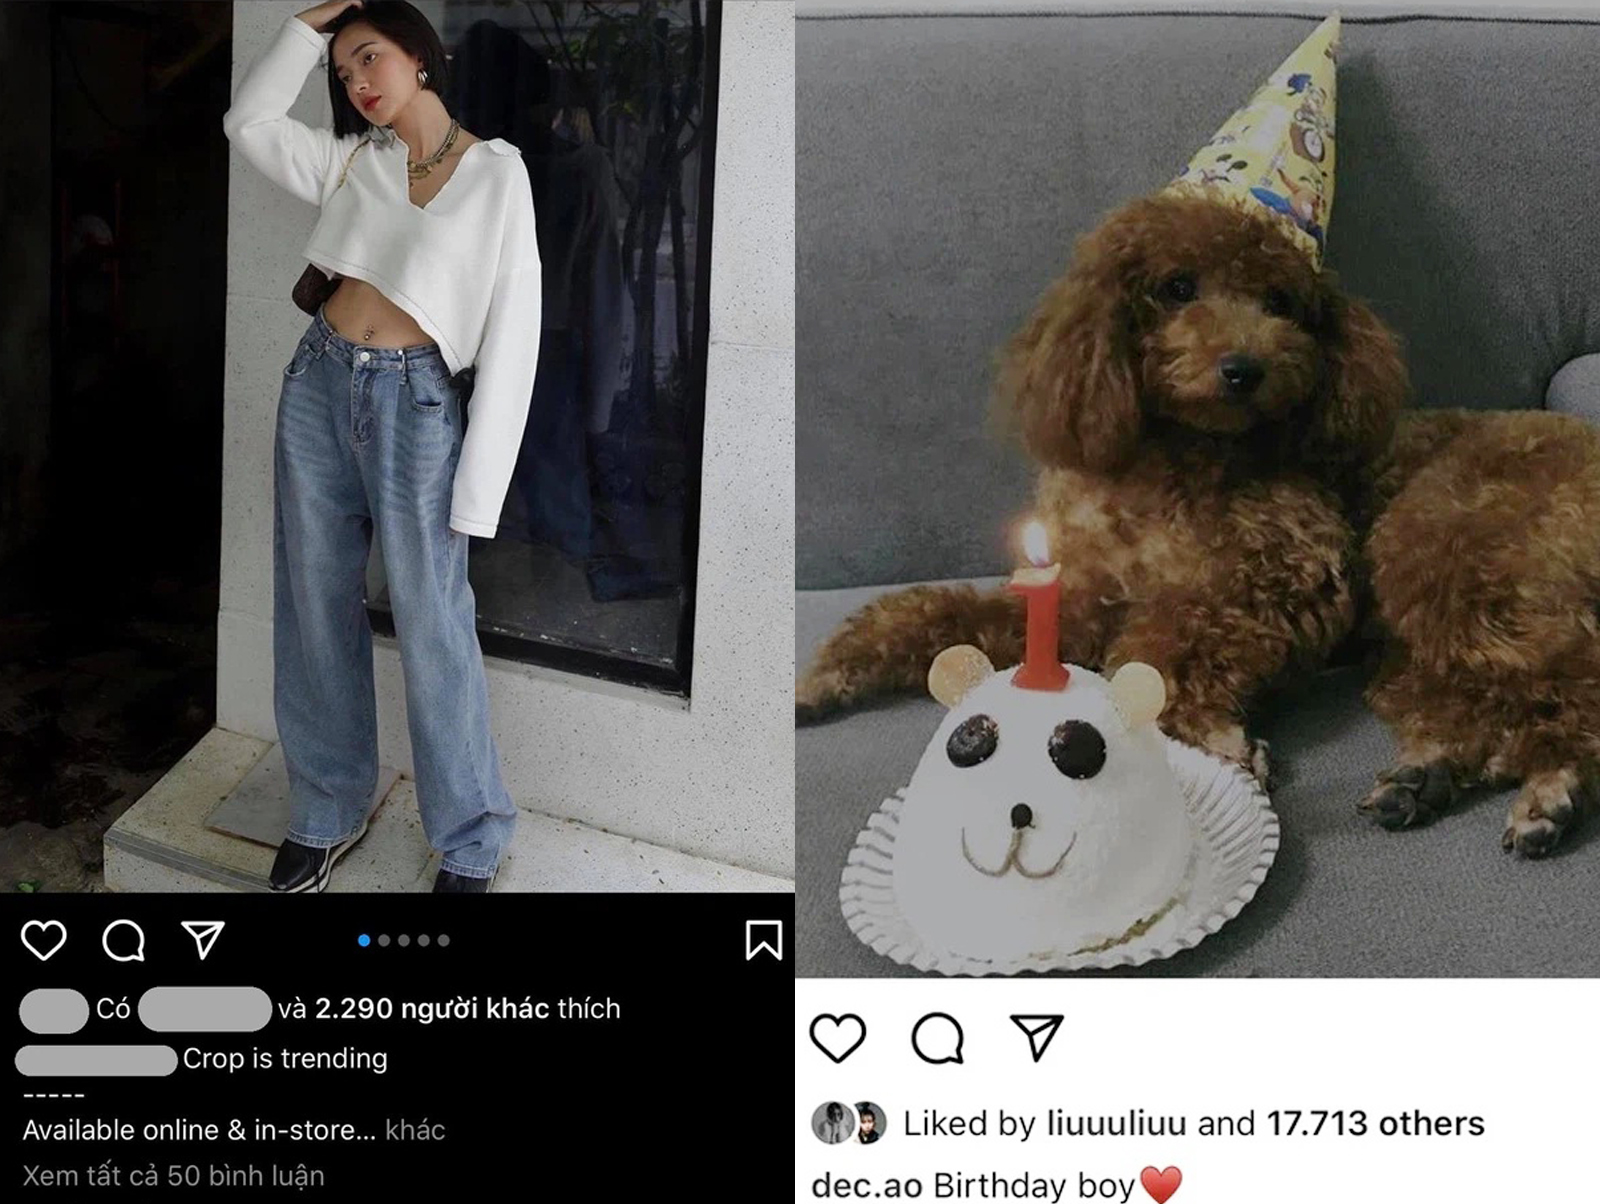 Hình ảnh Châu Bùi vẫn xuất hiện trên shop thời trang của Decao, cả hai còn cùng chúc mừng sinh nhật chú chó cưng nuôi chung khi còn yêu nhau.